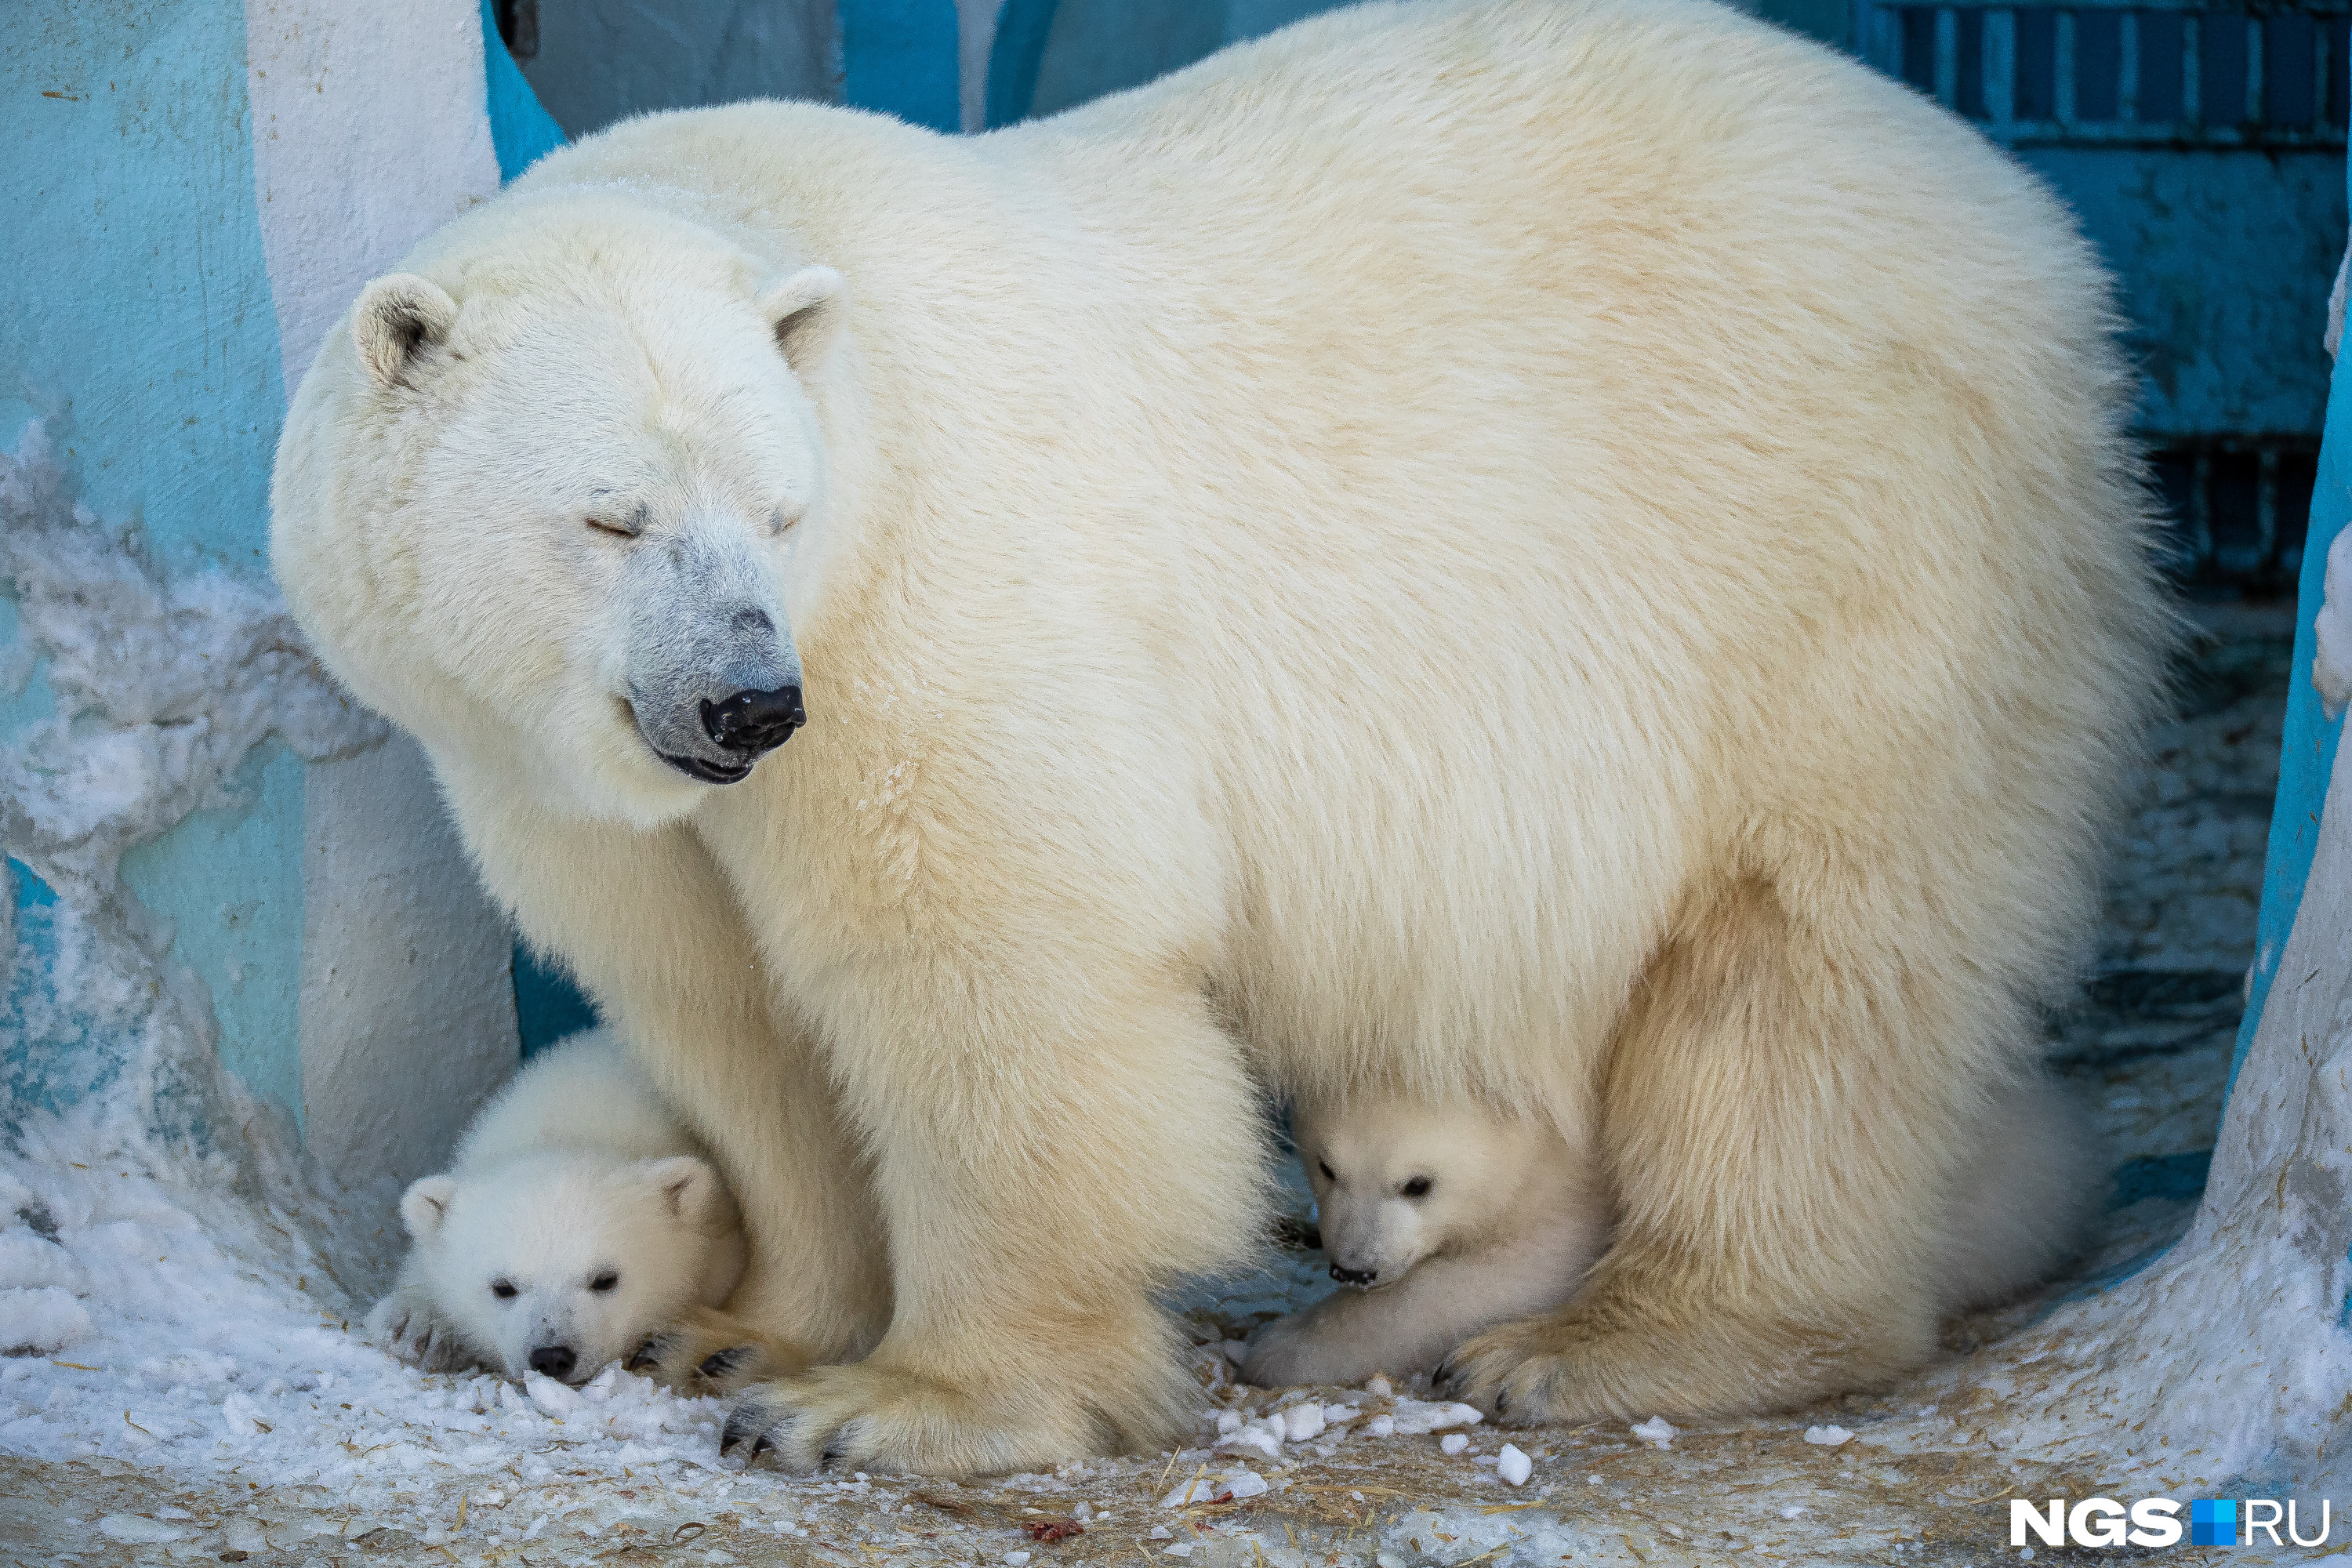 Вольер с белыми медвежатами открыли в Новосибирском зоопарке — смотрим трогательные фото крох